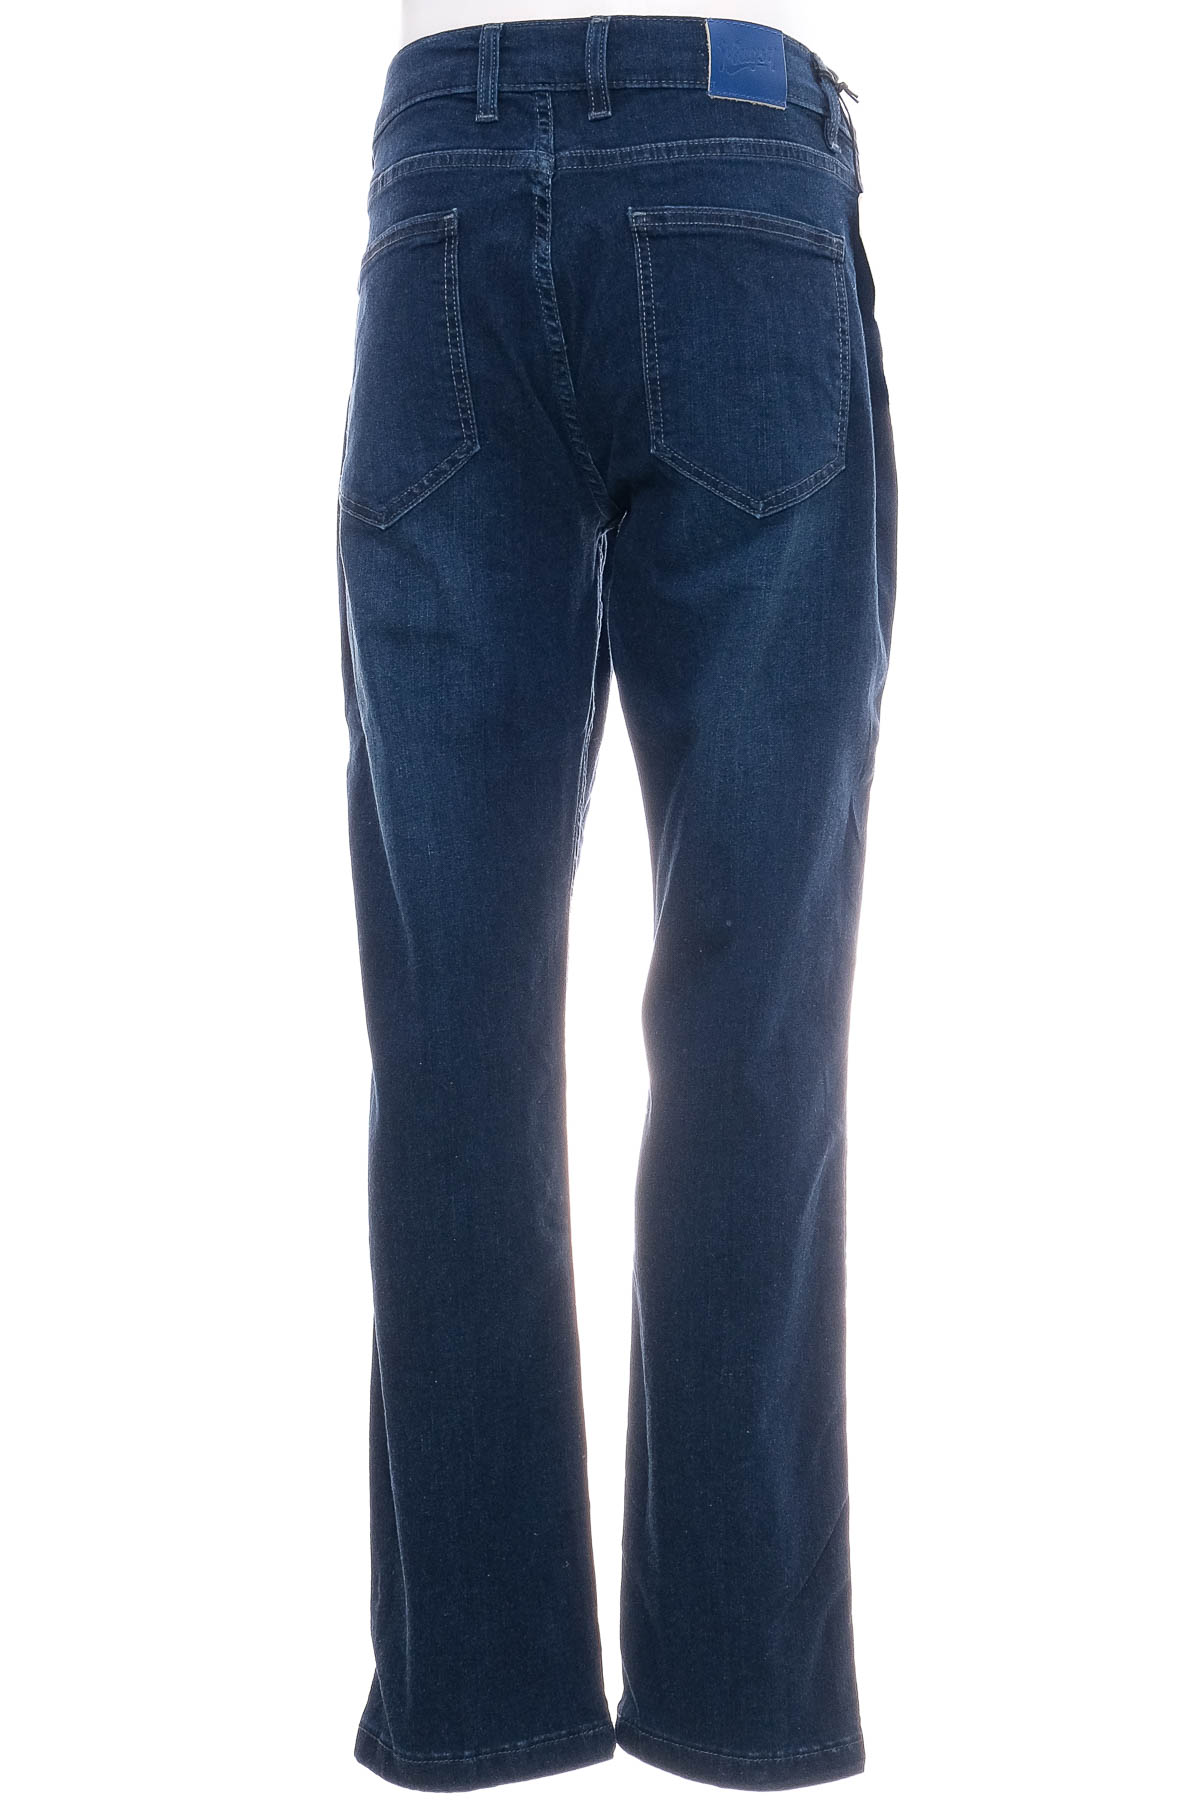 Ανδρικά τζιν - Mugsy Jeans - 1